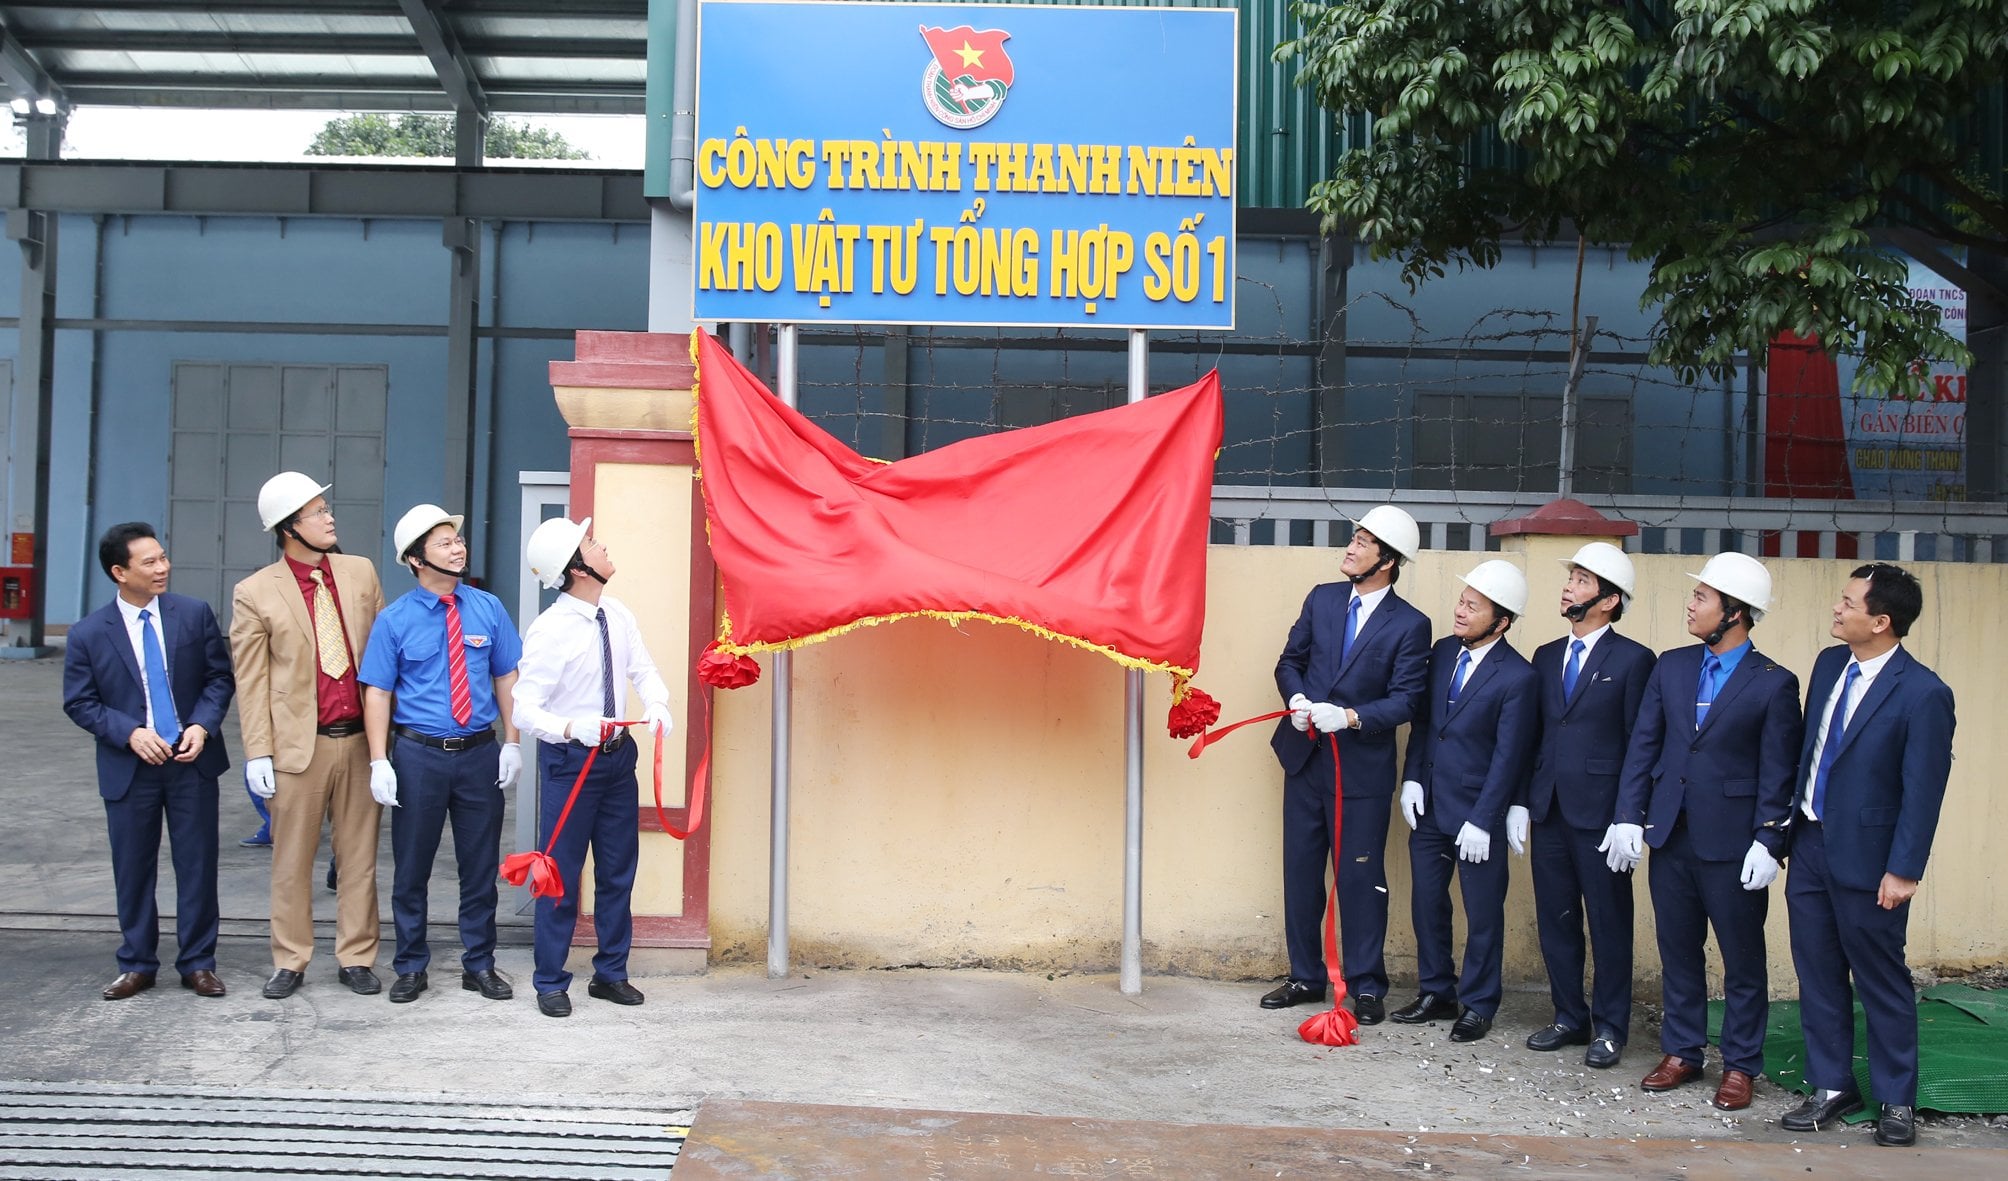 Đoàn than Quảng Ninh gắn biển công trình thanh niên cấp tỉnh cho công trình Kho vật tư tổng hợp số 1, chào mừng thành công Đại hội đại biểu Đảng bộ tỉnh lần thứ XV, nhiệm kỳ 2020 – 2025. 